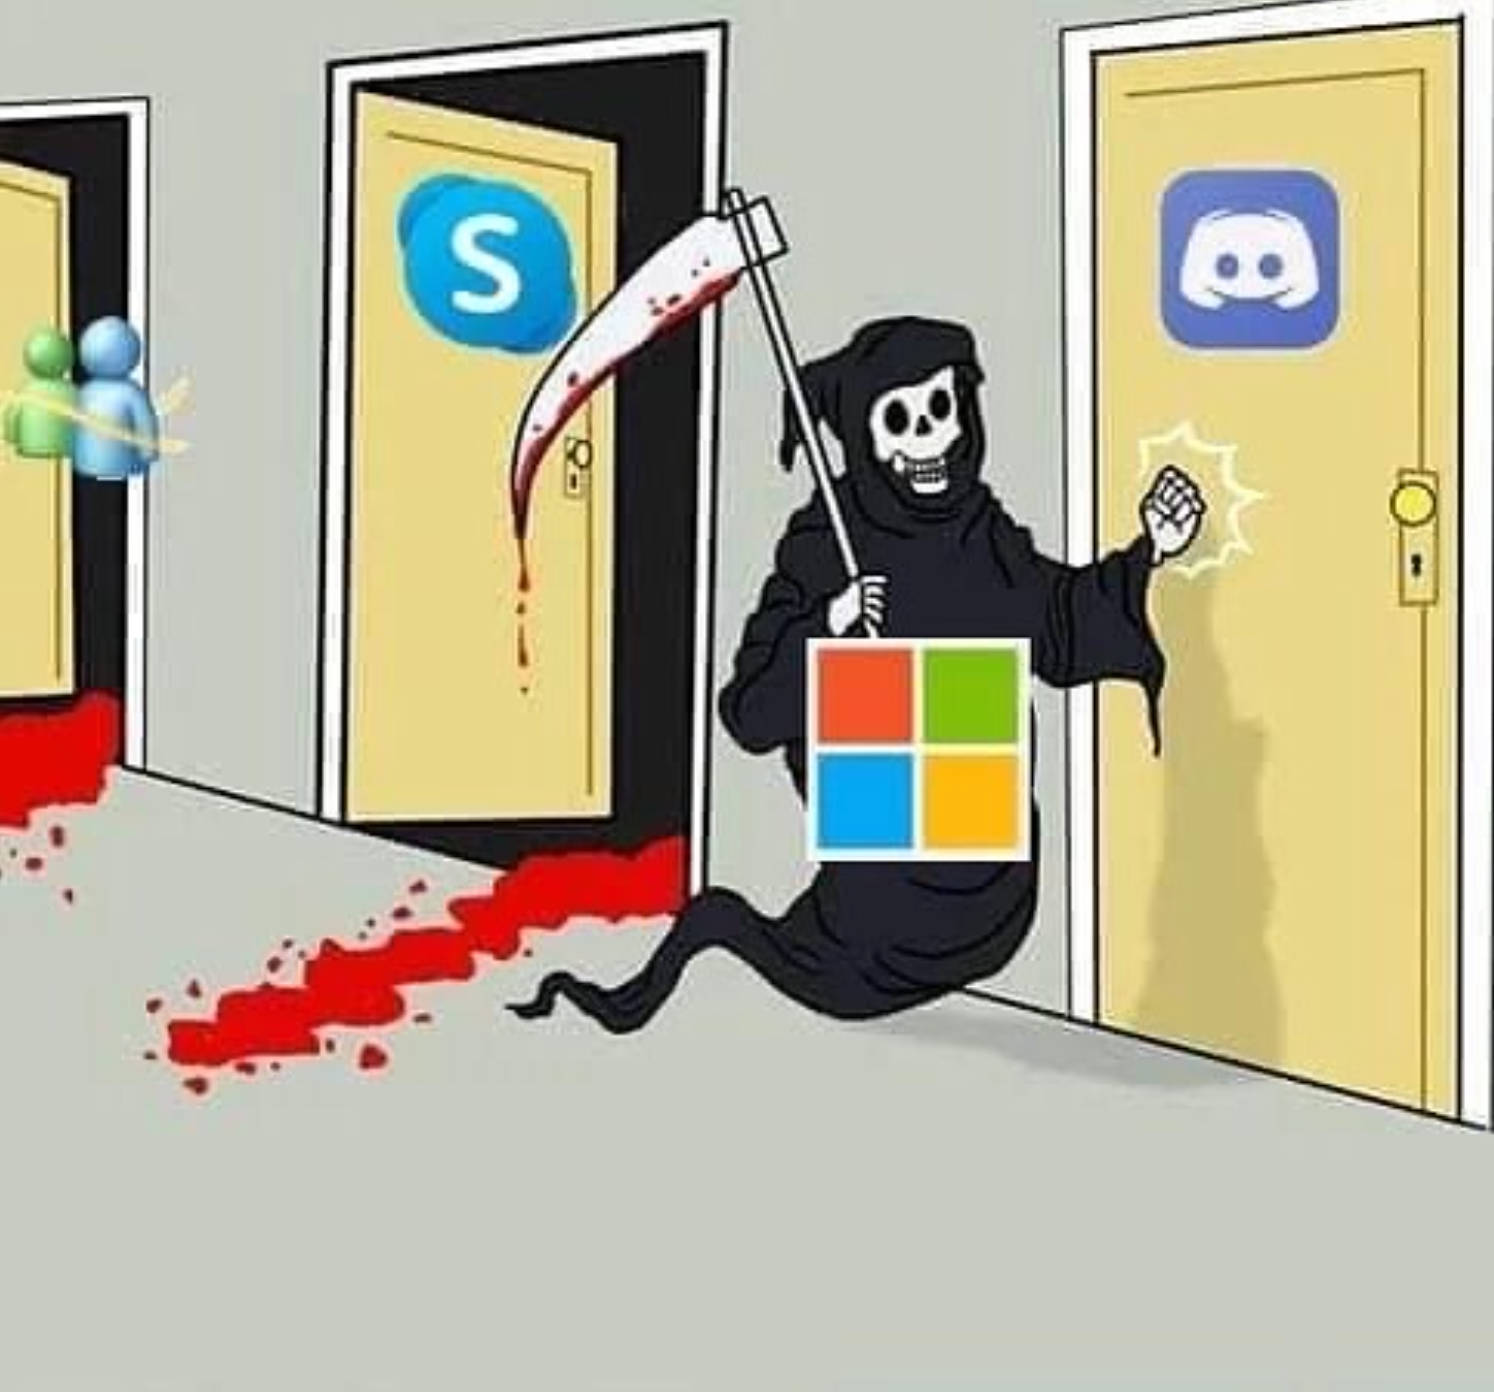 Download Microsoft Reaper Meme Pfp Wallpaper 